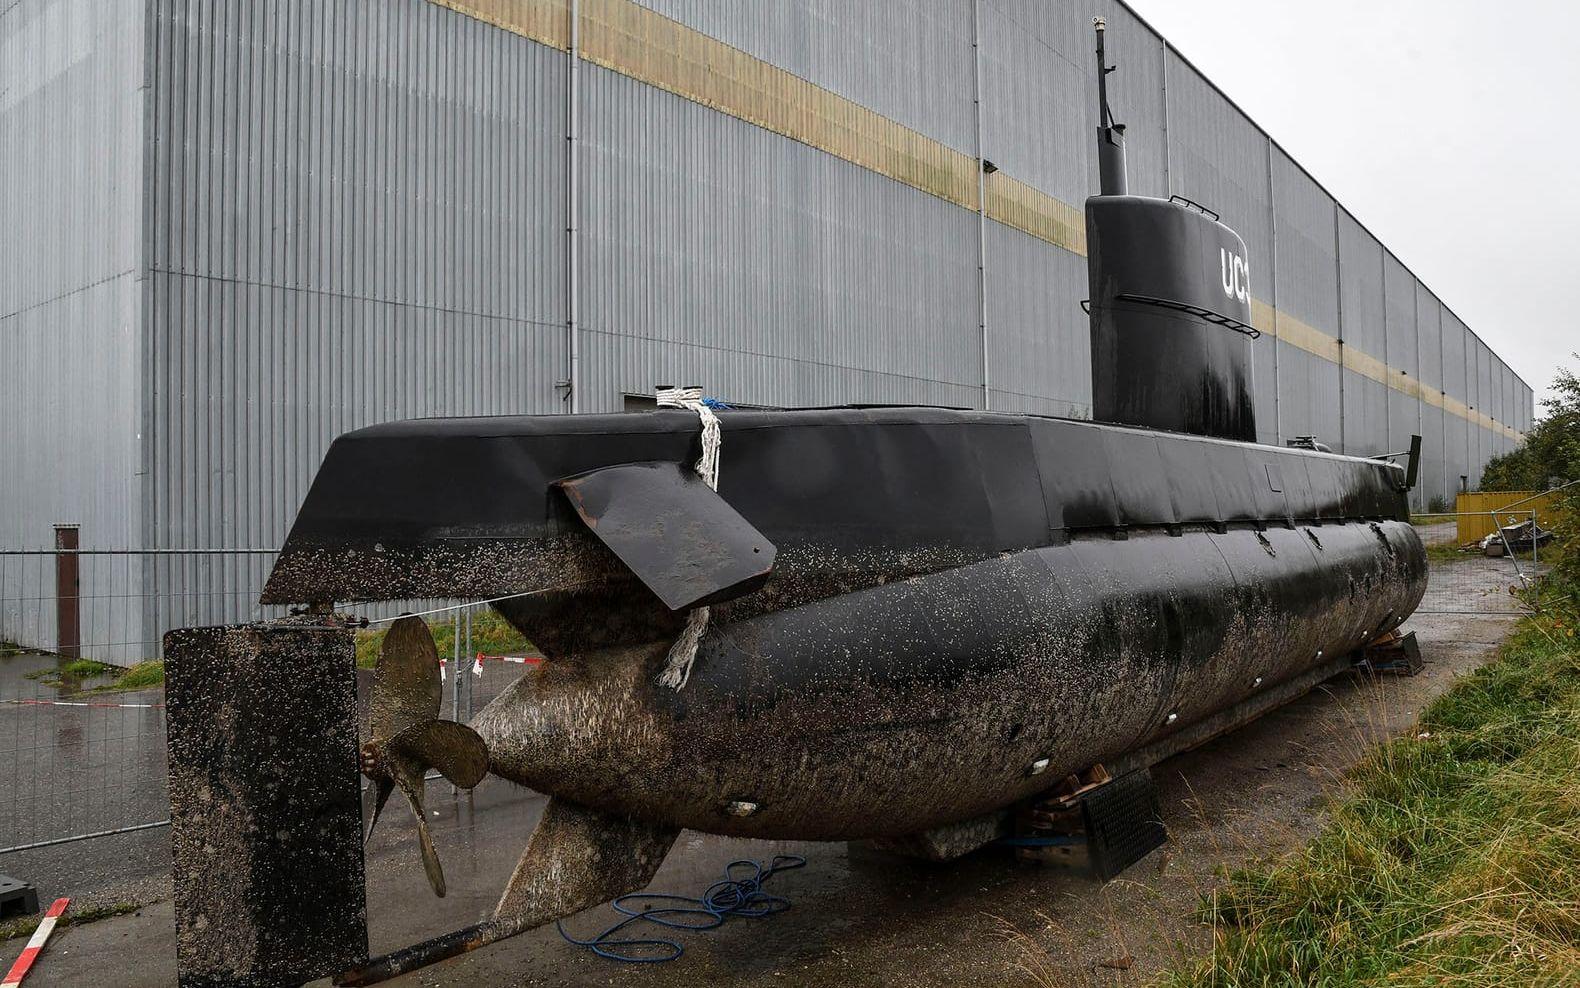 Ubåten som Kim Wall försvann i tillsammans med den misstänkte mördaren Peter Madsen. FOTO: TT
